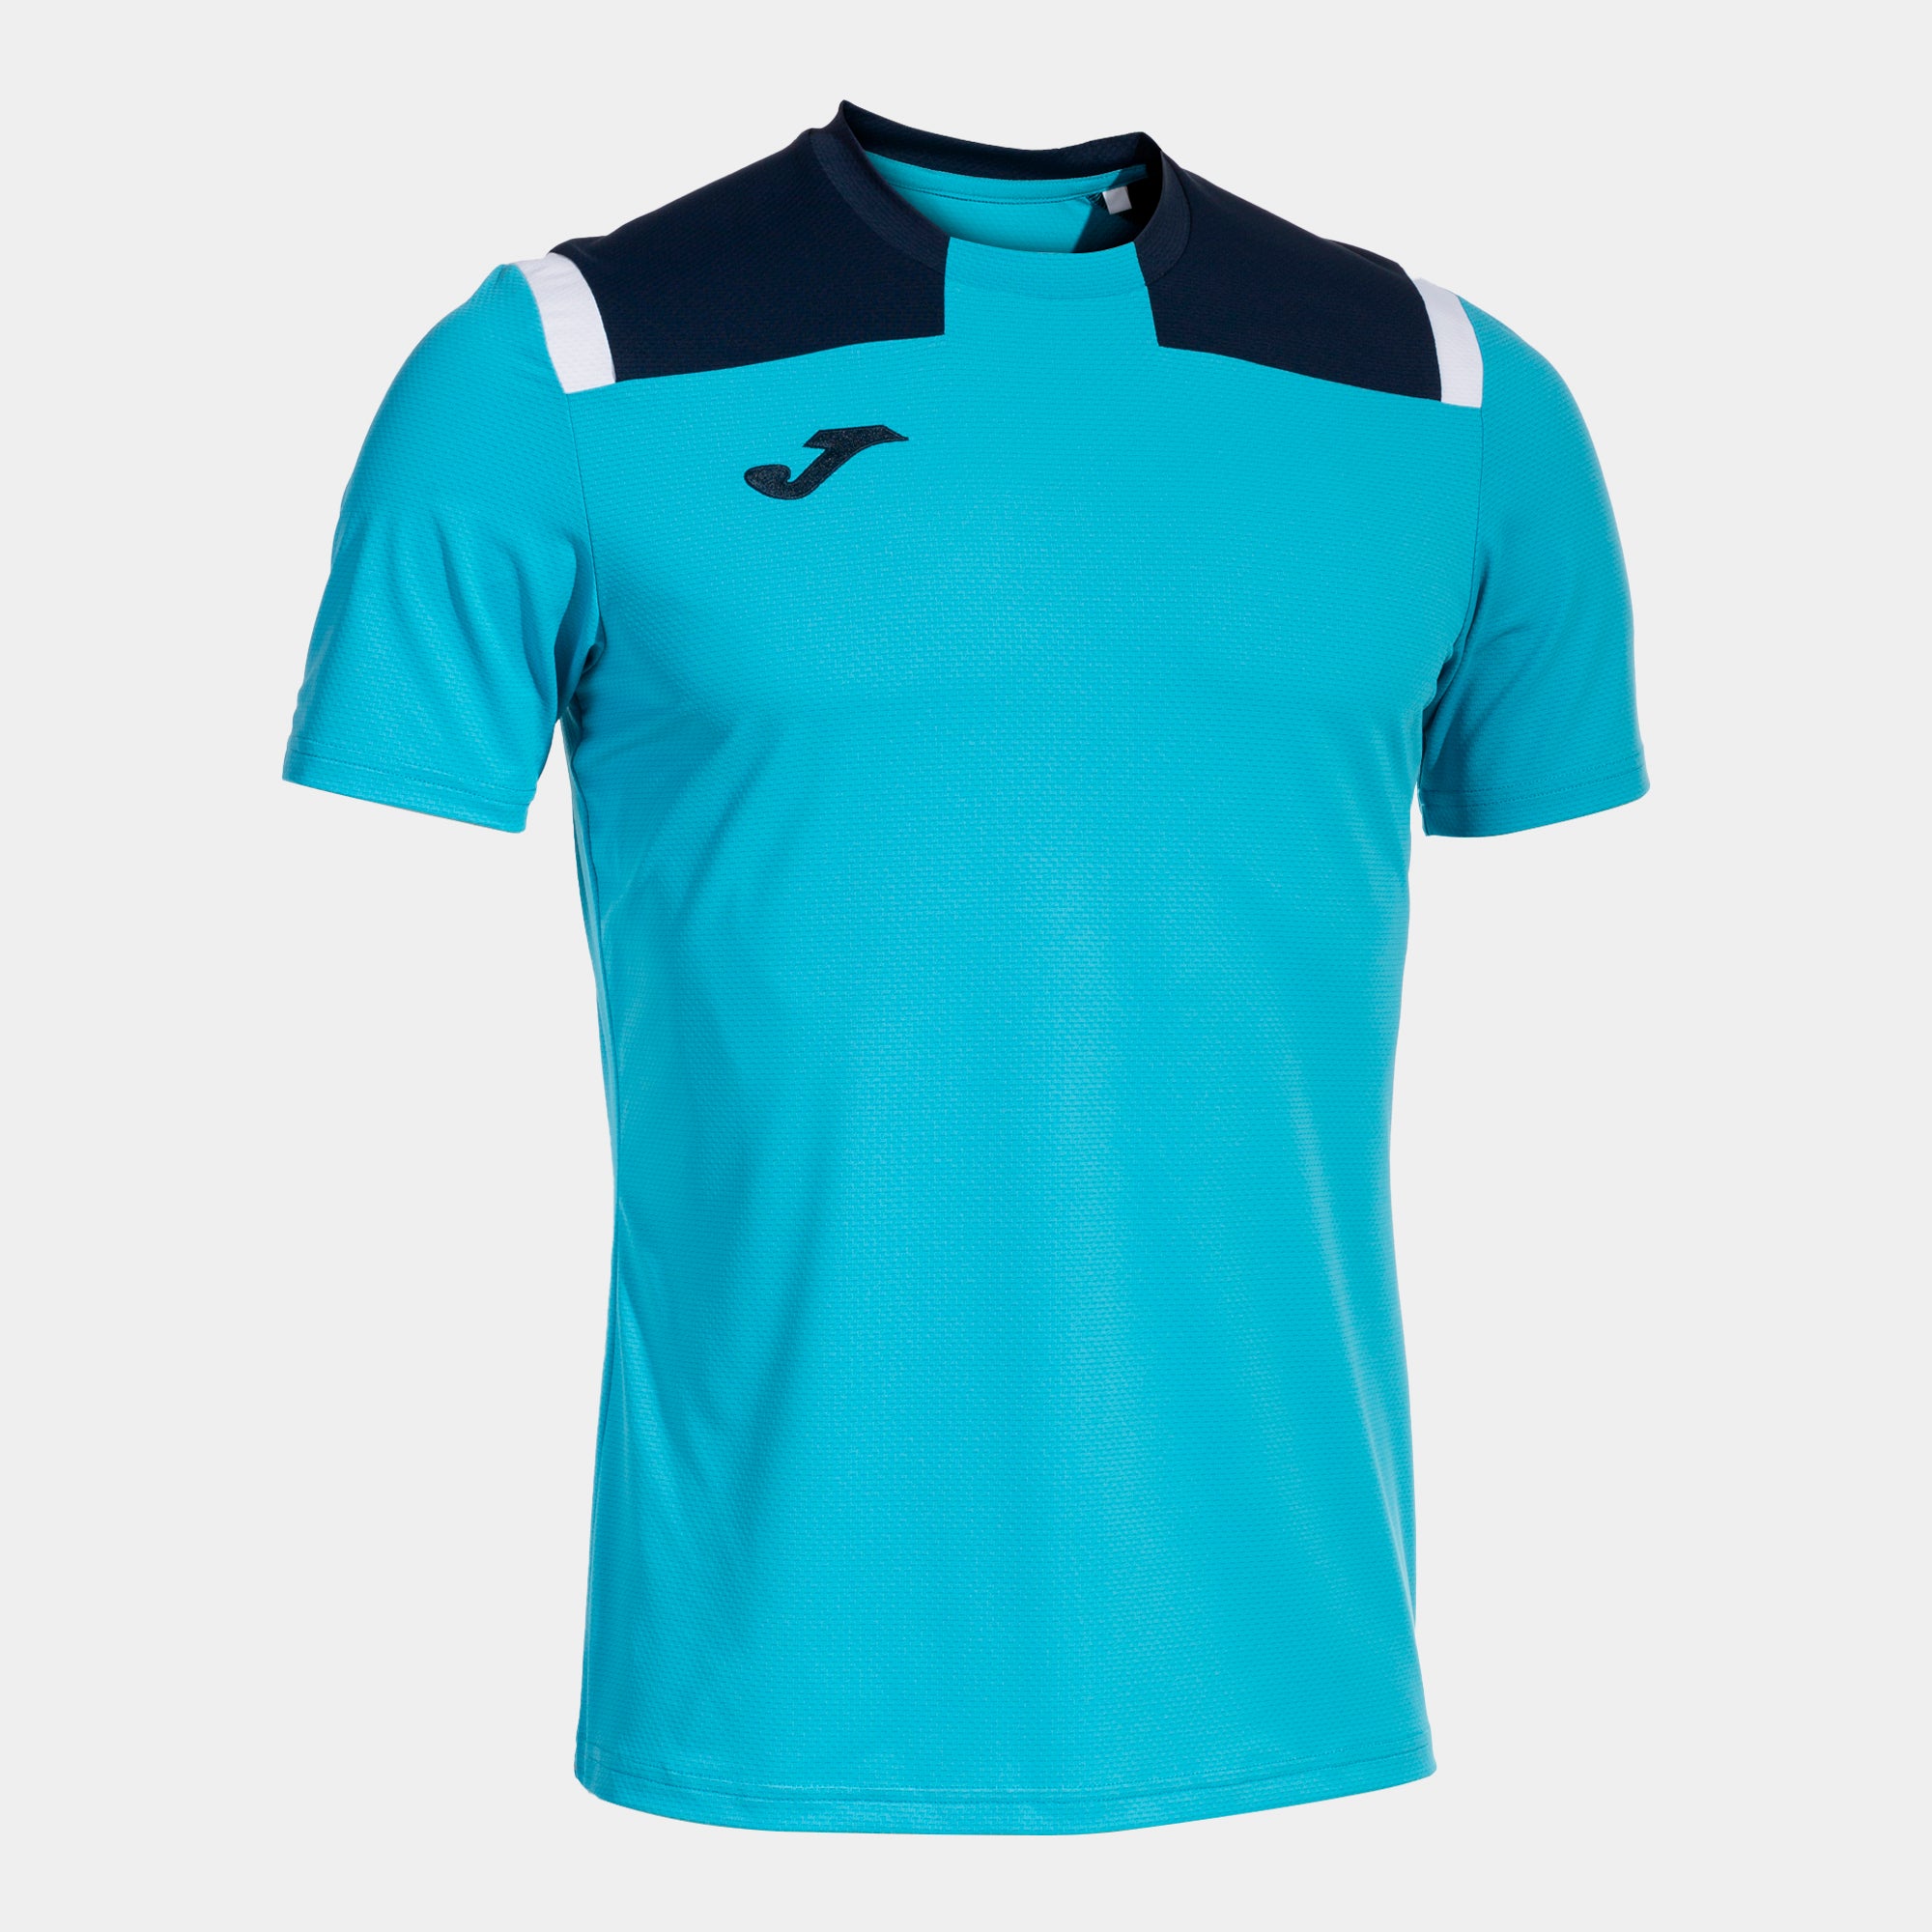 Joma Toledo Hoodie T-Shirt - Turquoise/Dark Navy